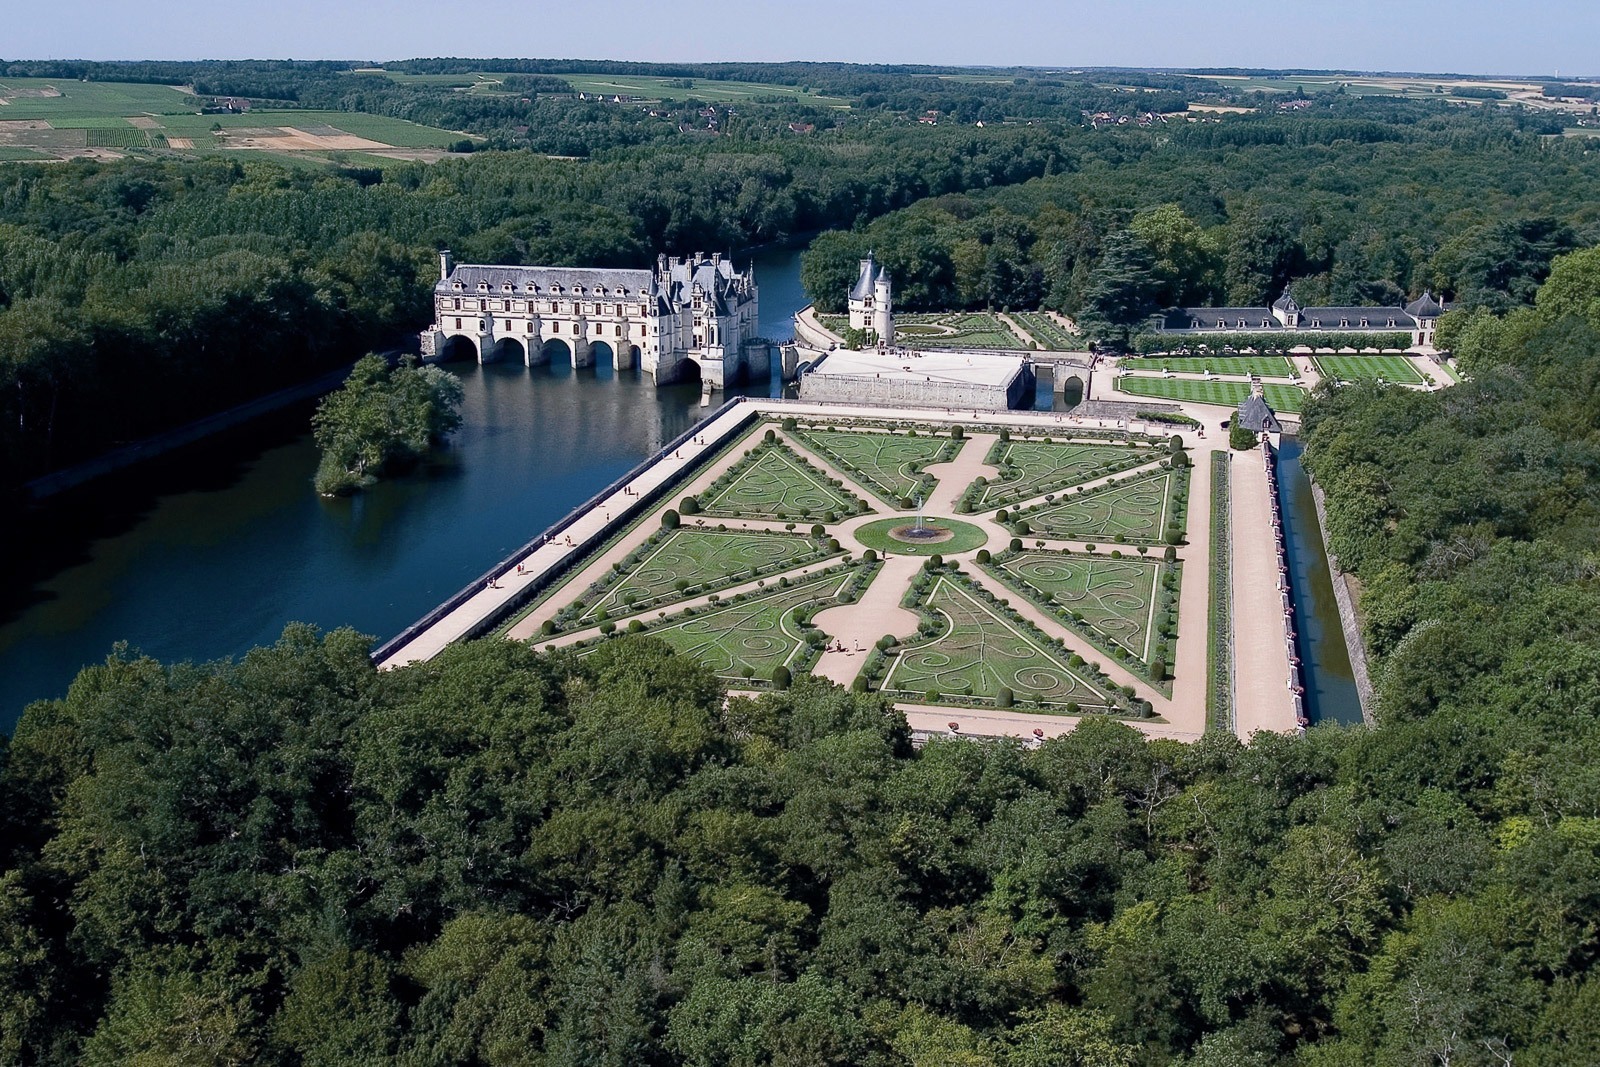 Château De Chenonceau Pics, Man Made Collection